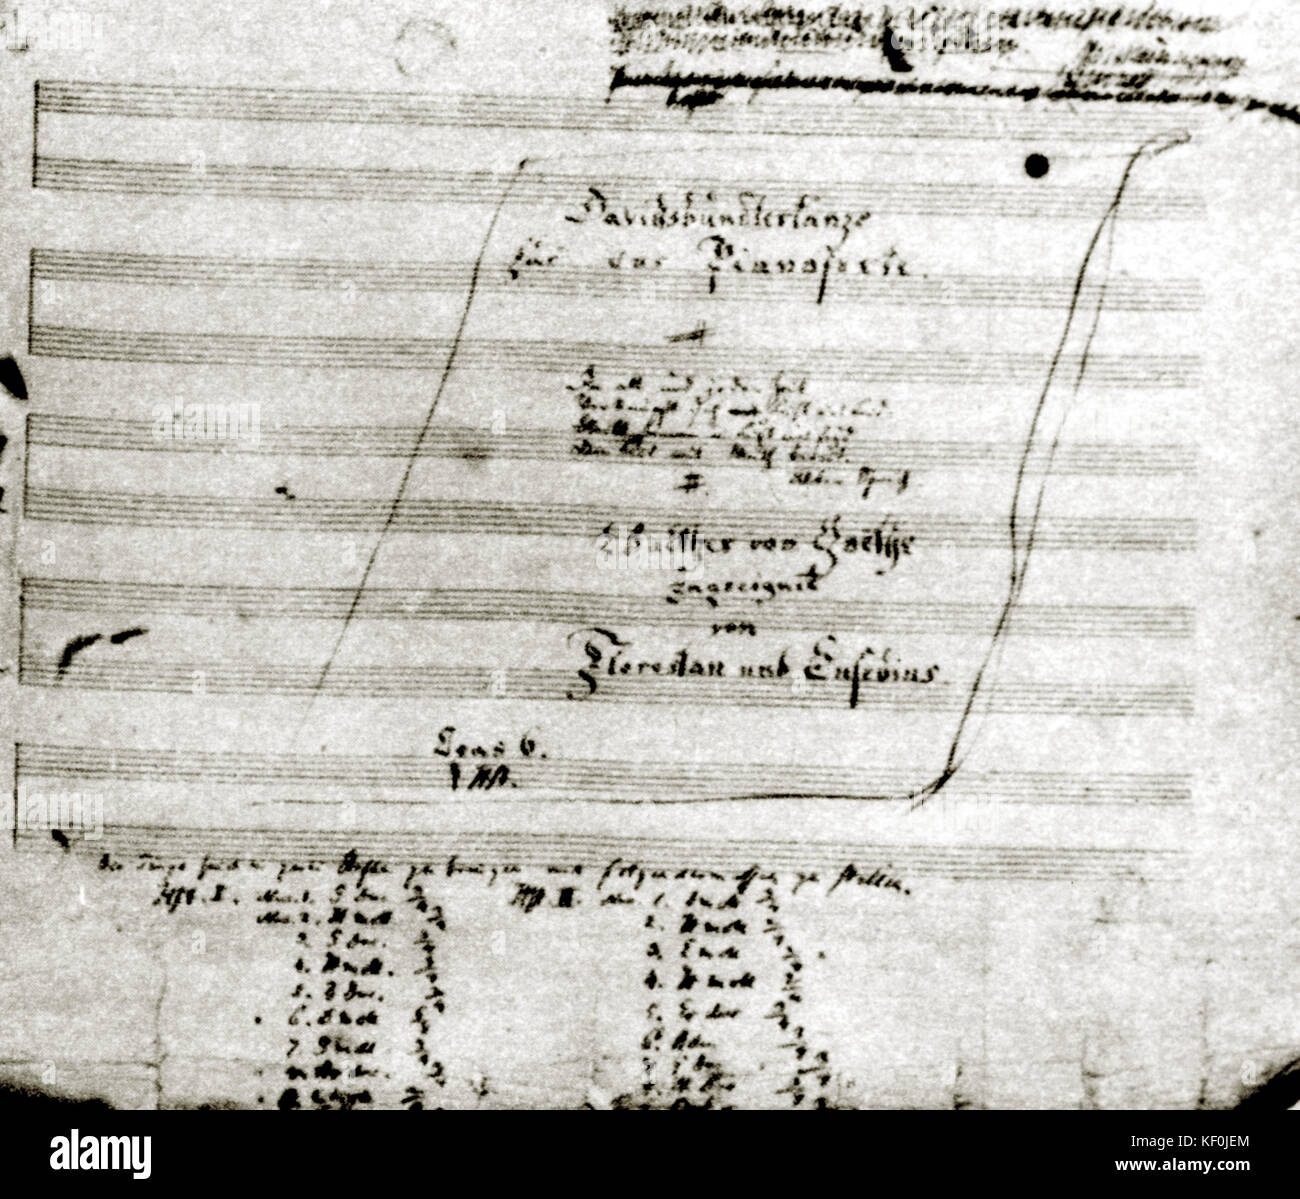 Schumann, Robert - Davidsbundlertanze Titlepage of Schumann's Davidsbundlertanze op.6.  Robert Schumann. Stock Photo